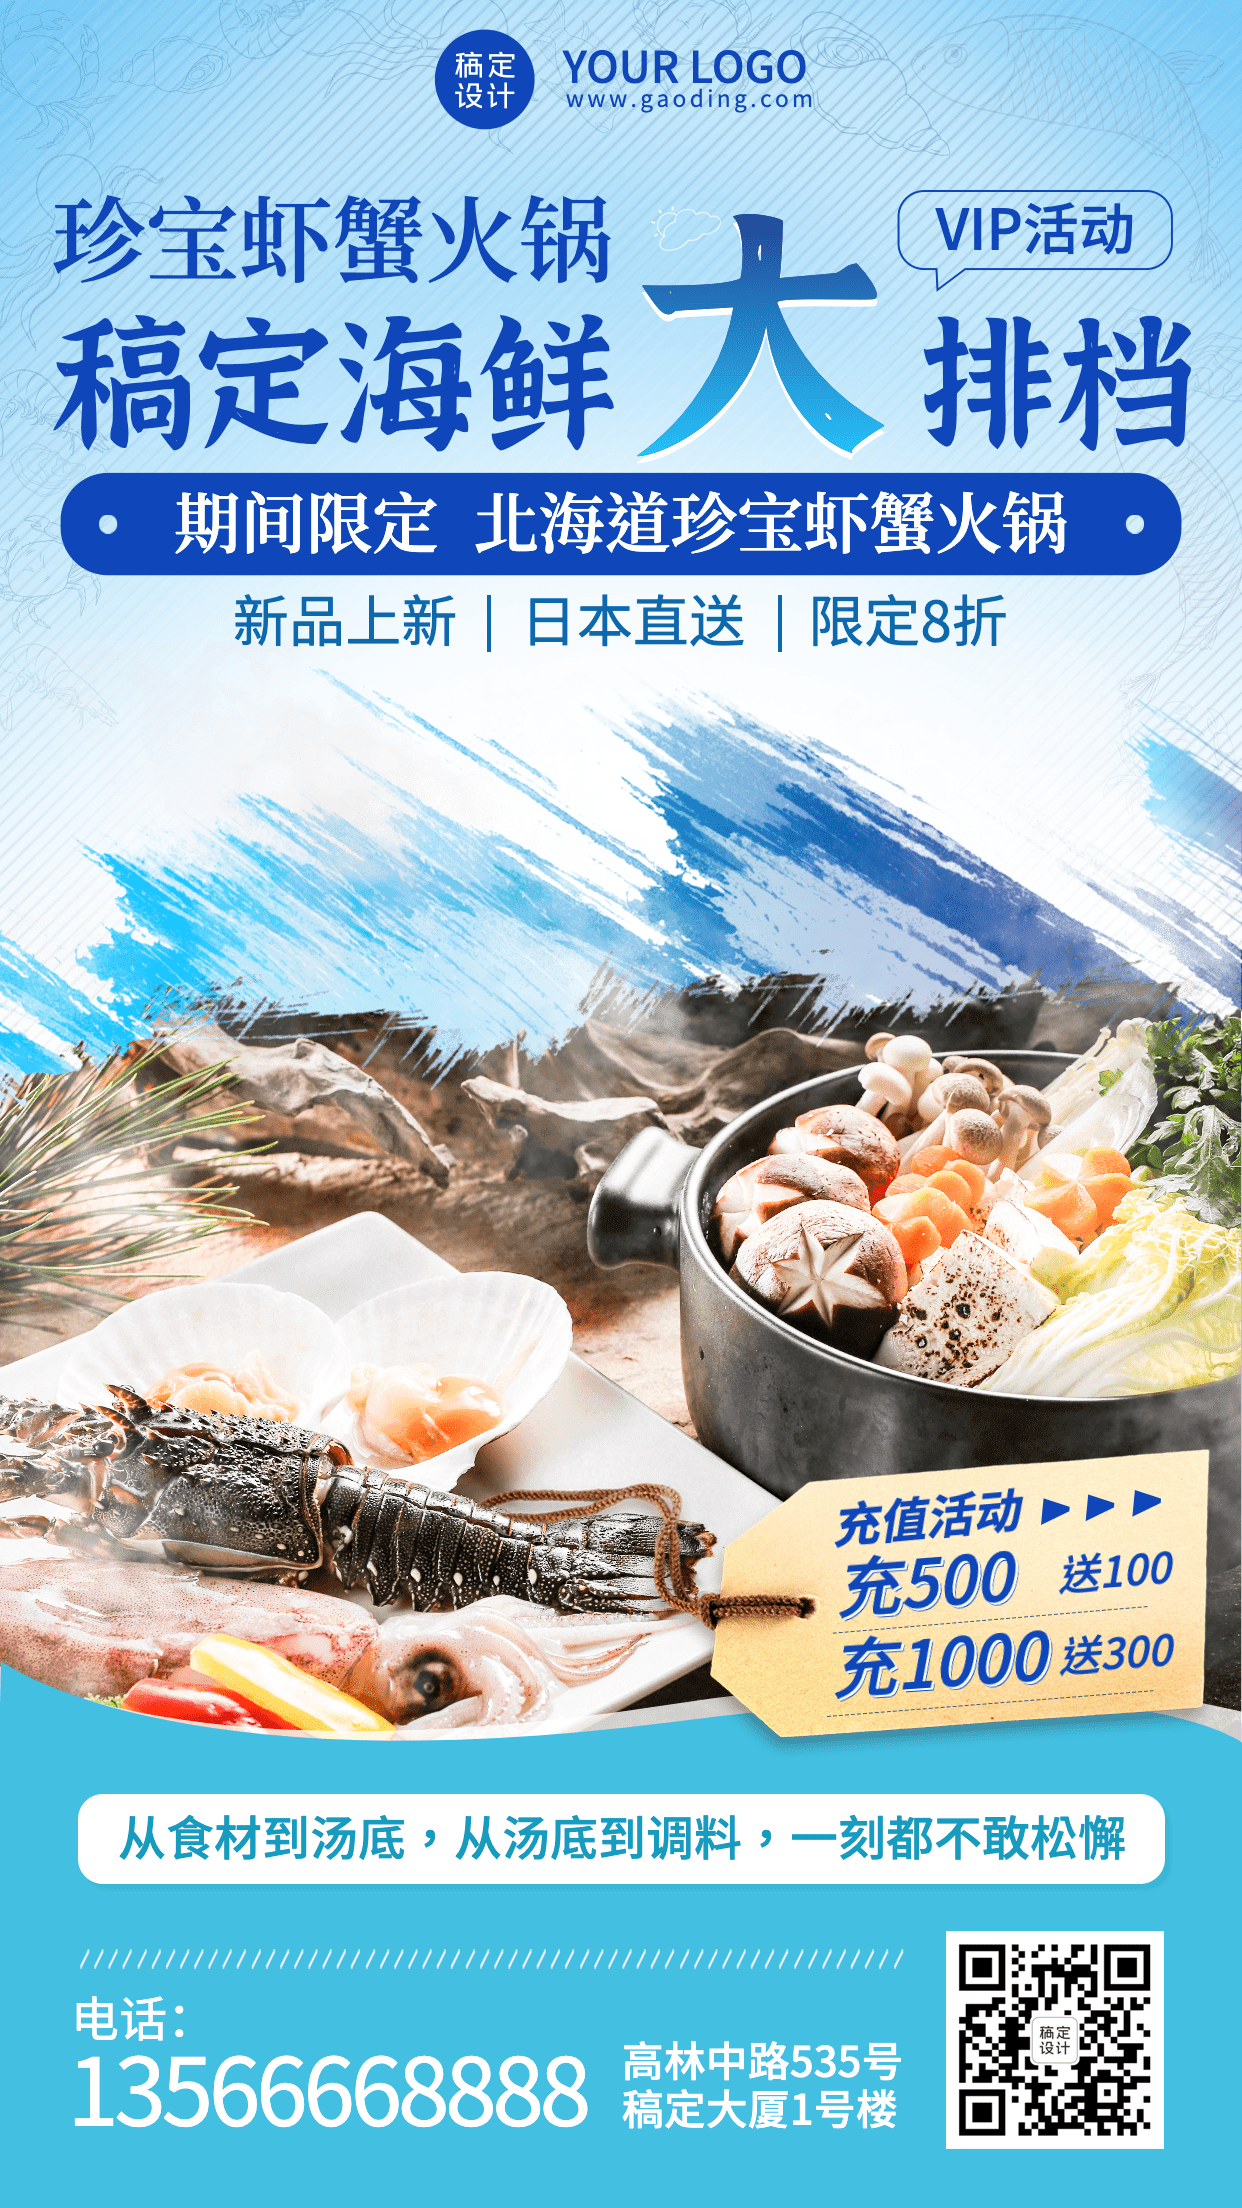 餐饮海鲜大排档虾蟹火锅新品上市手机海报预览效果